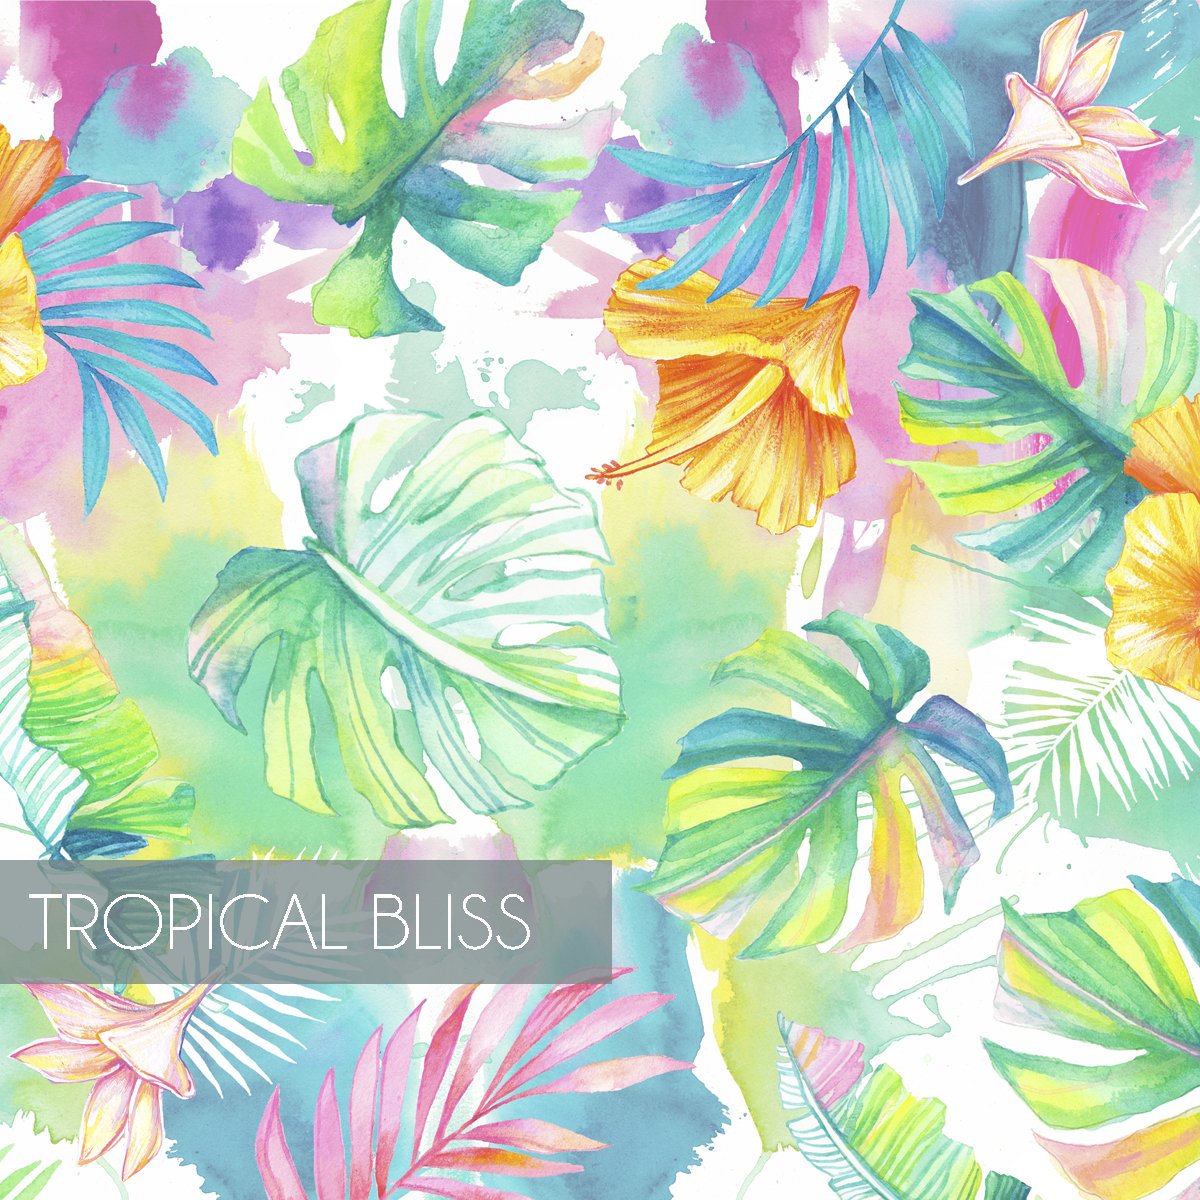 Tropicalbliss.jpg